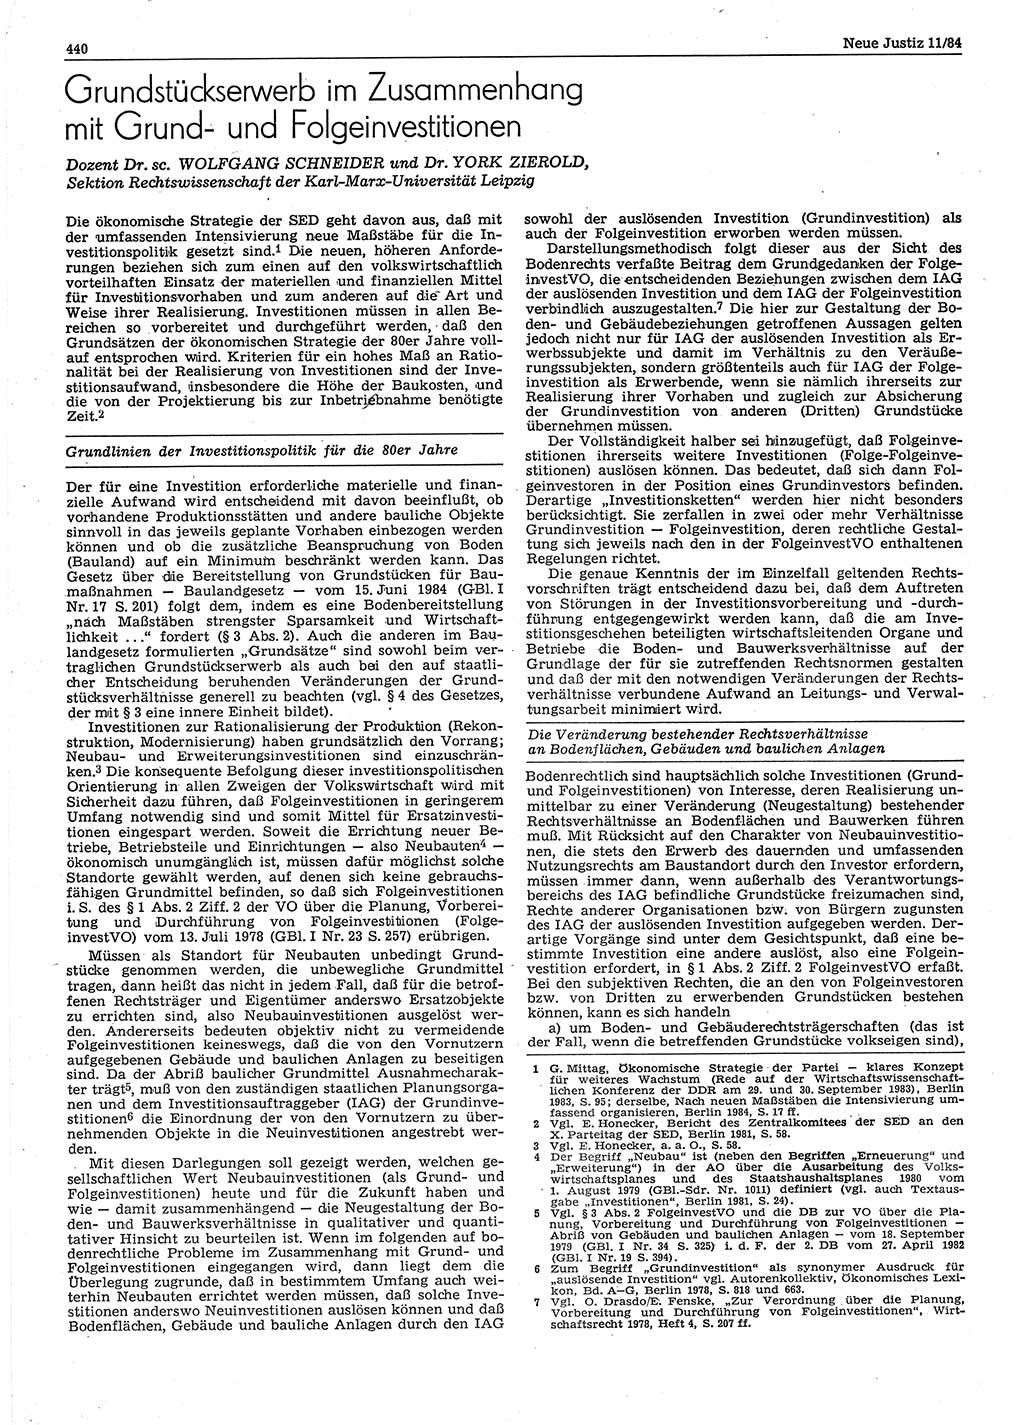 Neue Justiz (NJ), Zeitschrift für sozialistisches Recht und Gesetzlichkeit [Deutsche Demokratische Republik (DDR)], 38. Jahrgang 1984, Seite 440 (NJ DDR 1984, S. 440)